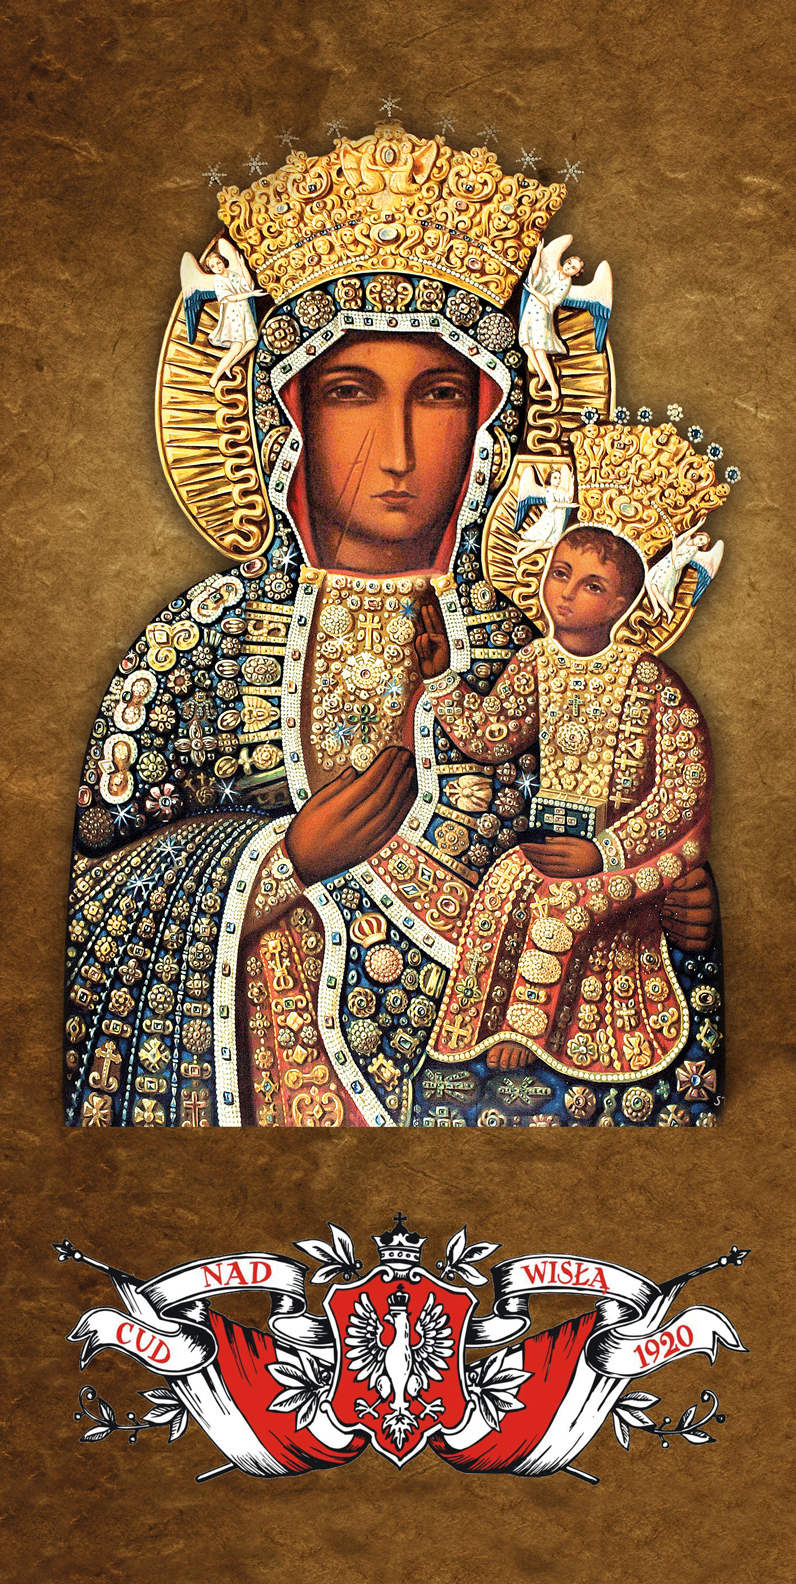 Matka Boża Częstochowska - Cud nad Wisłą - 02 - Baner religijny - 100x200